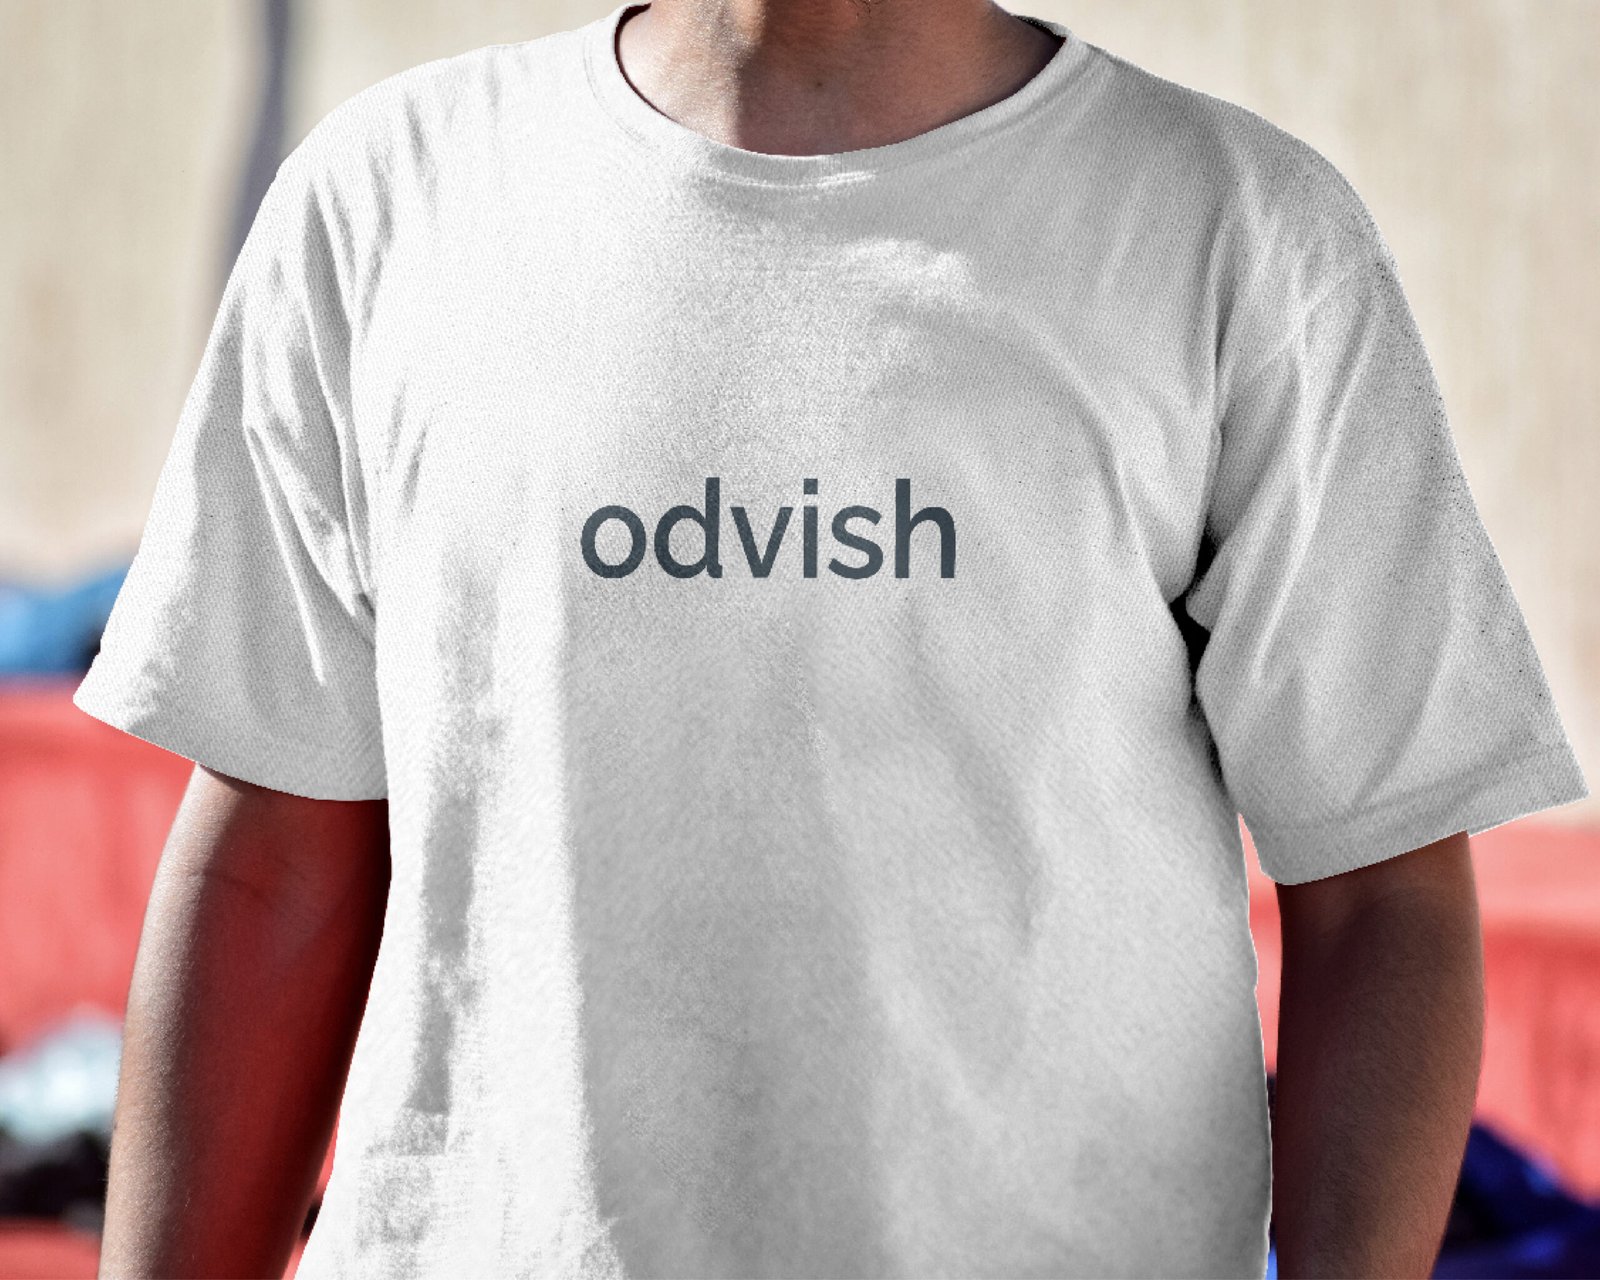 Odvish - Fintech Company Brand Identity